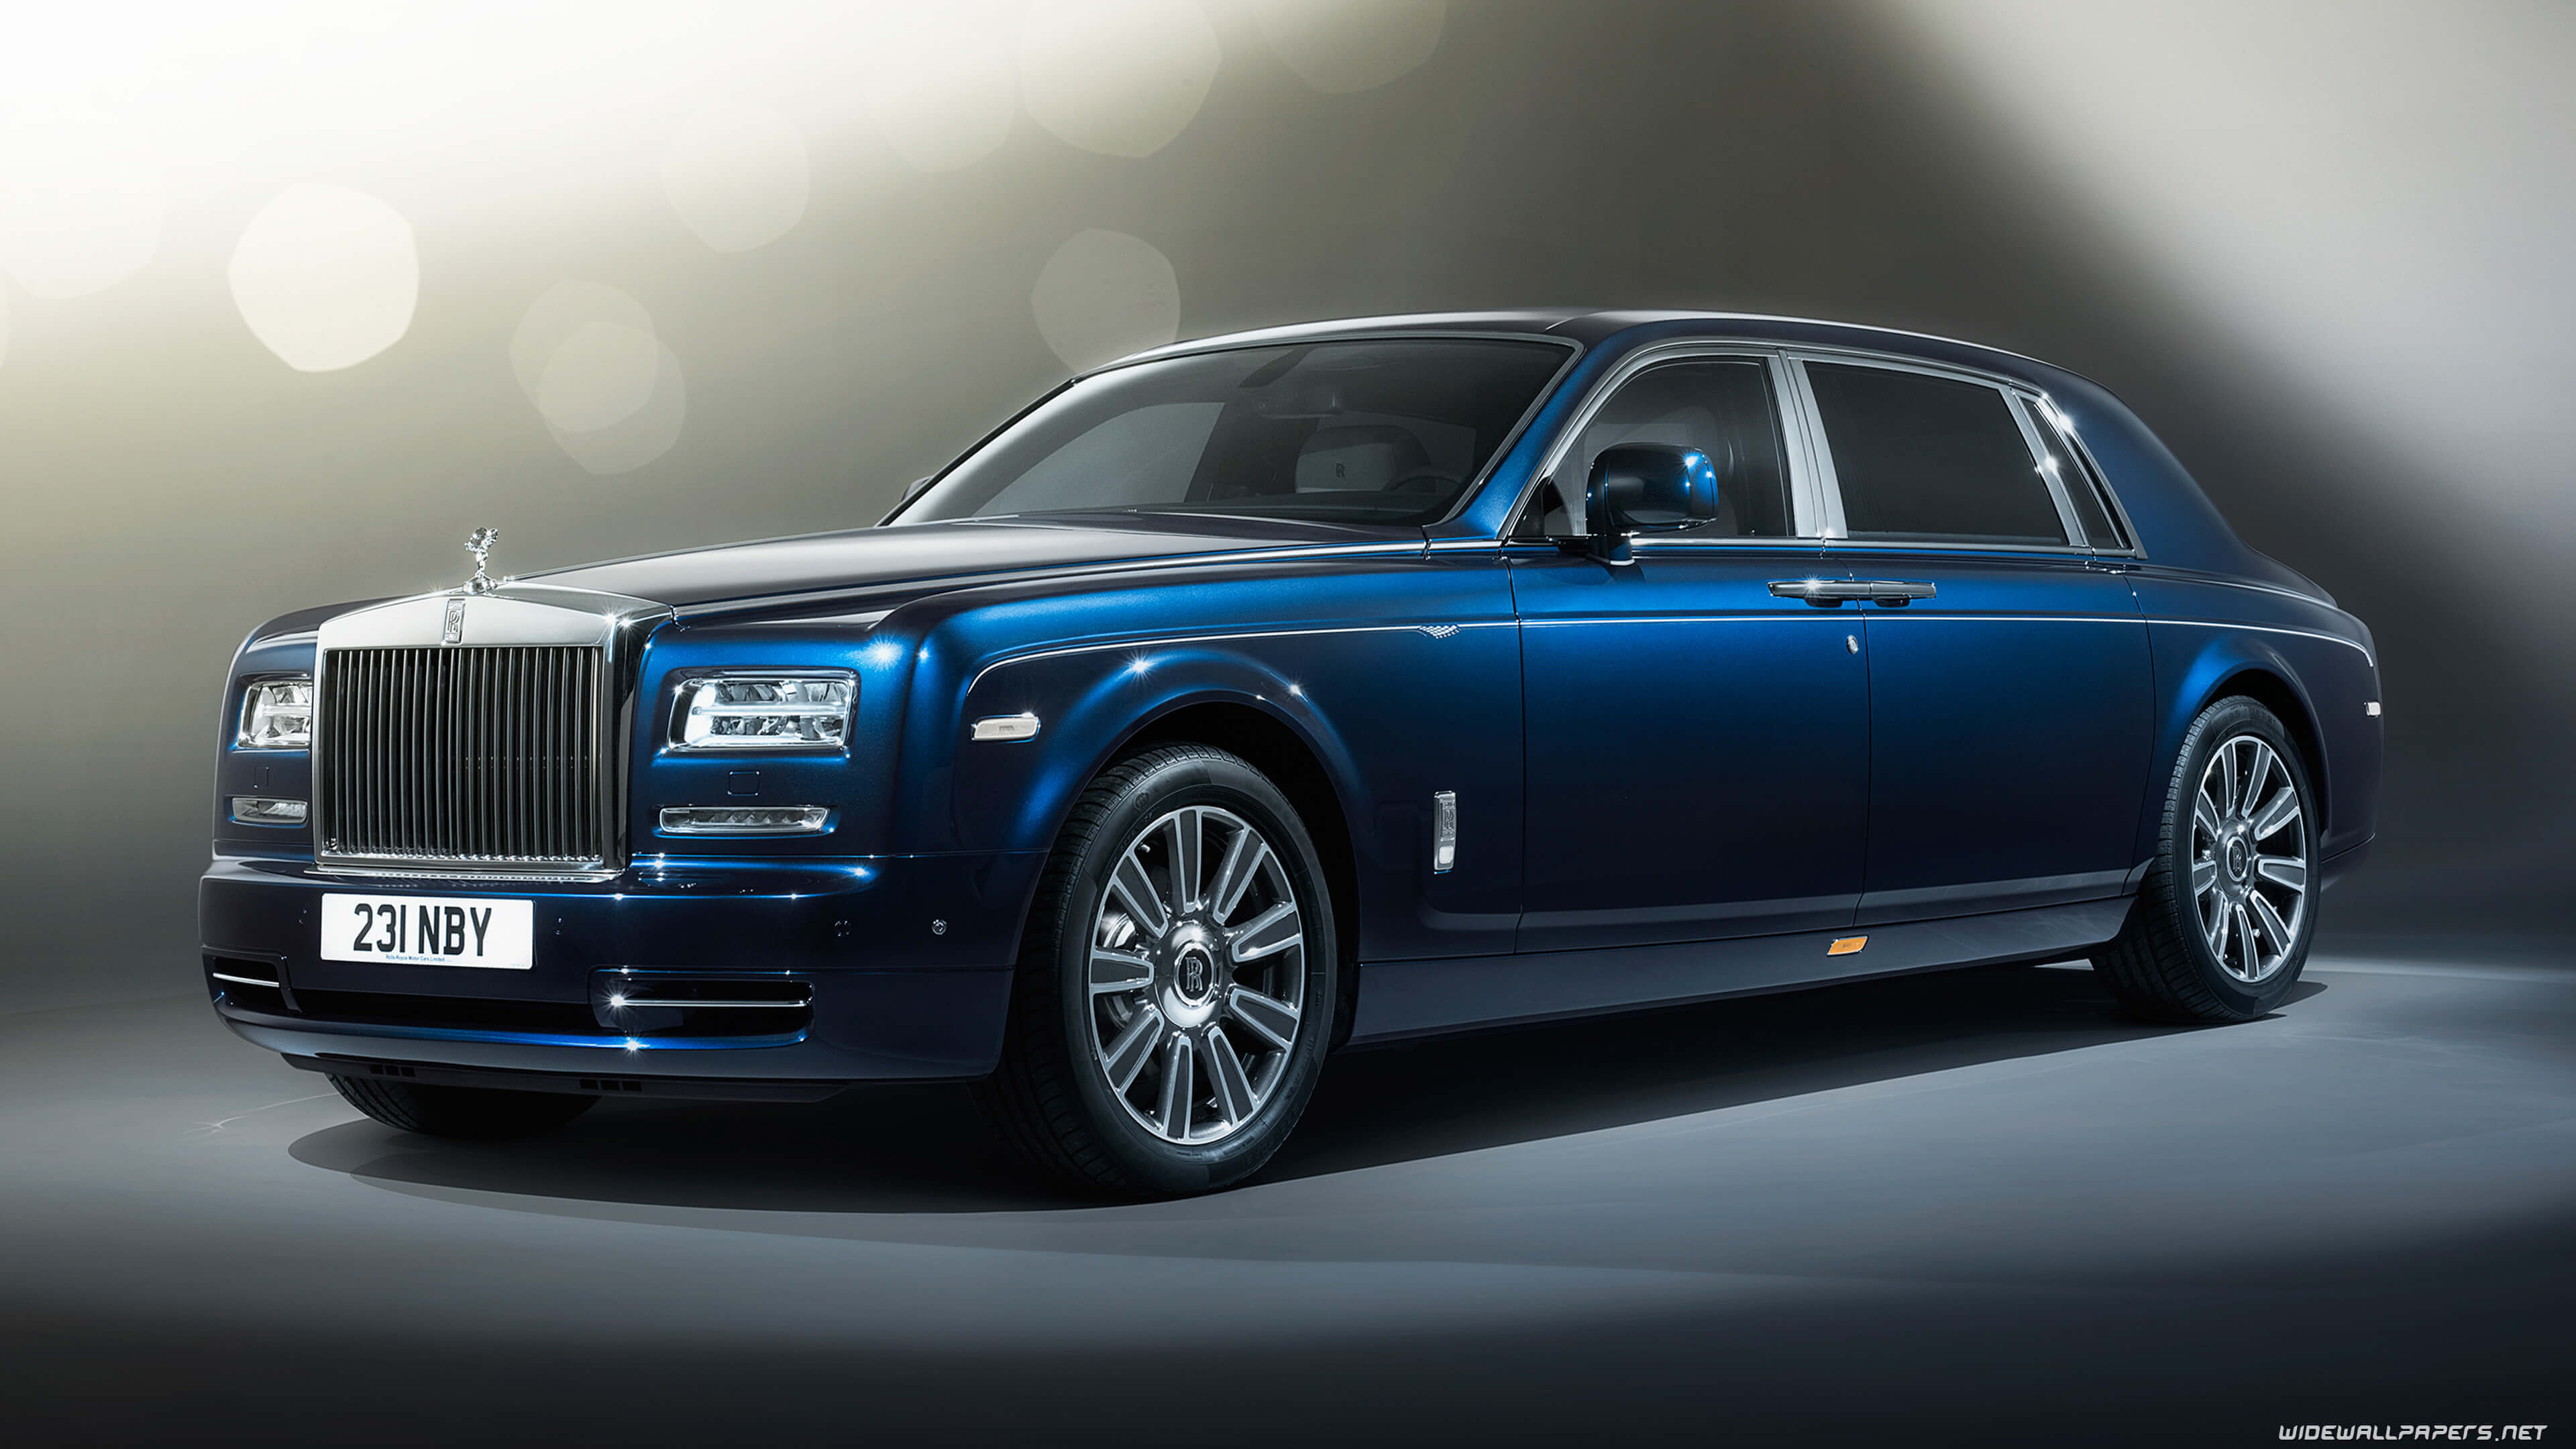 Blue 2017 Rolls Royce Phantom UHD 4K Wallpaper